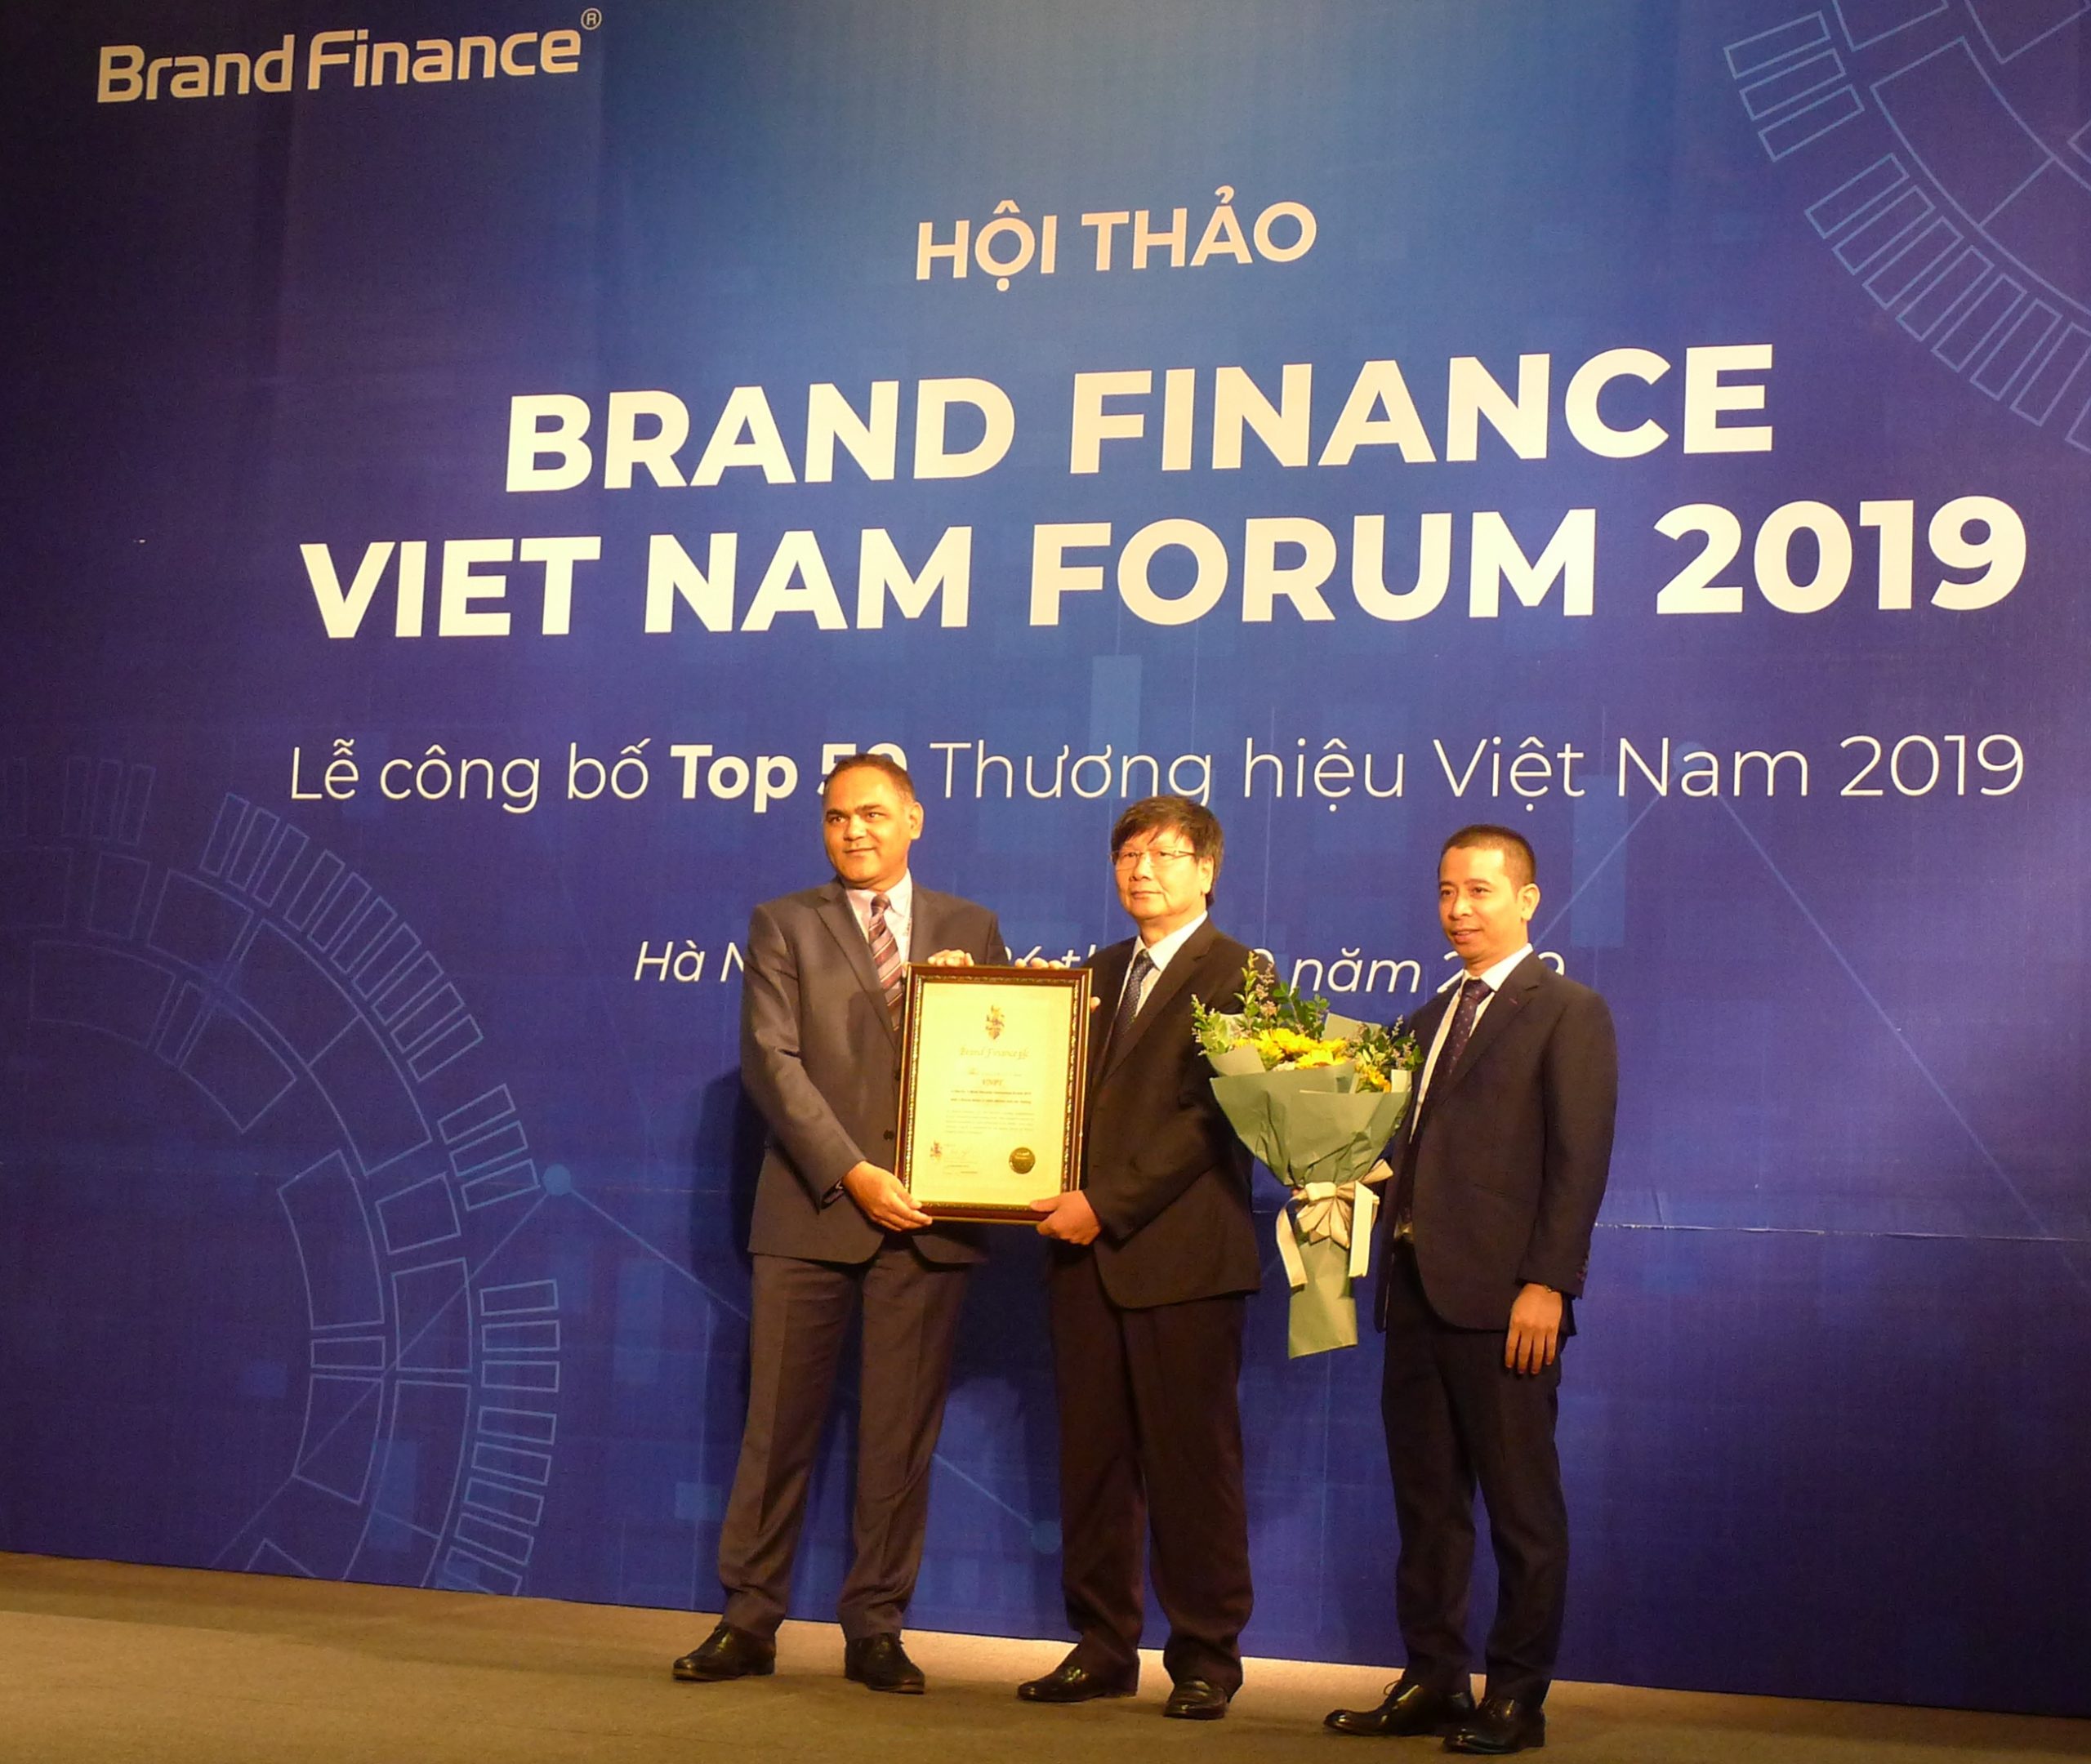 VNPT vươn lên vị trí số 2 về giá trị thương hiệu tại Việt Nam